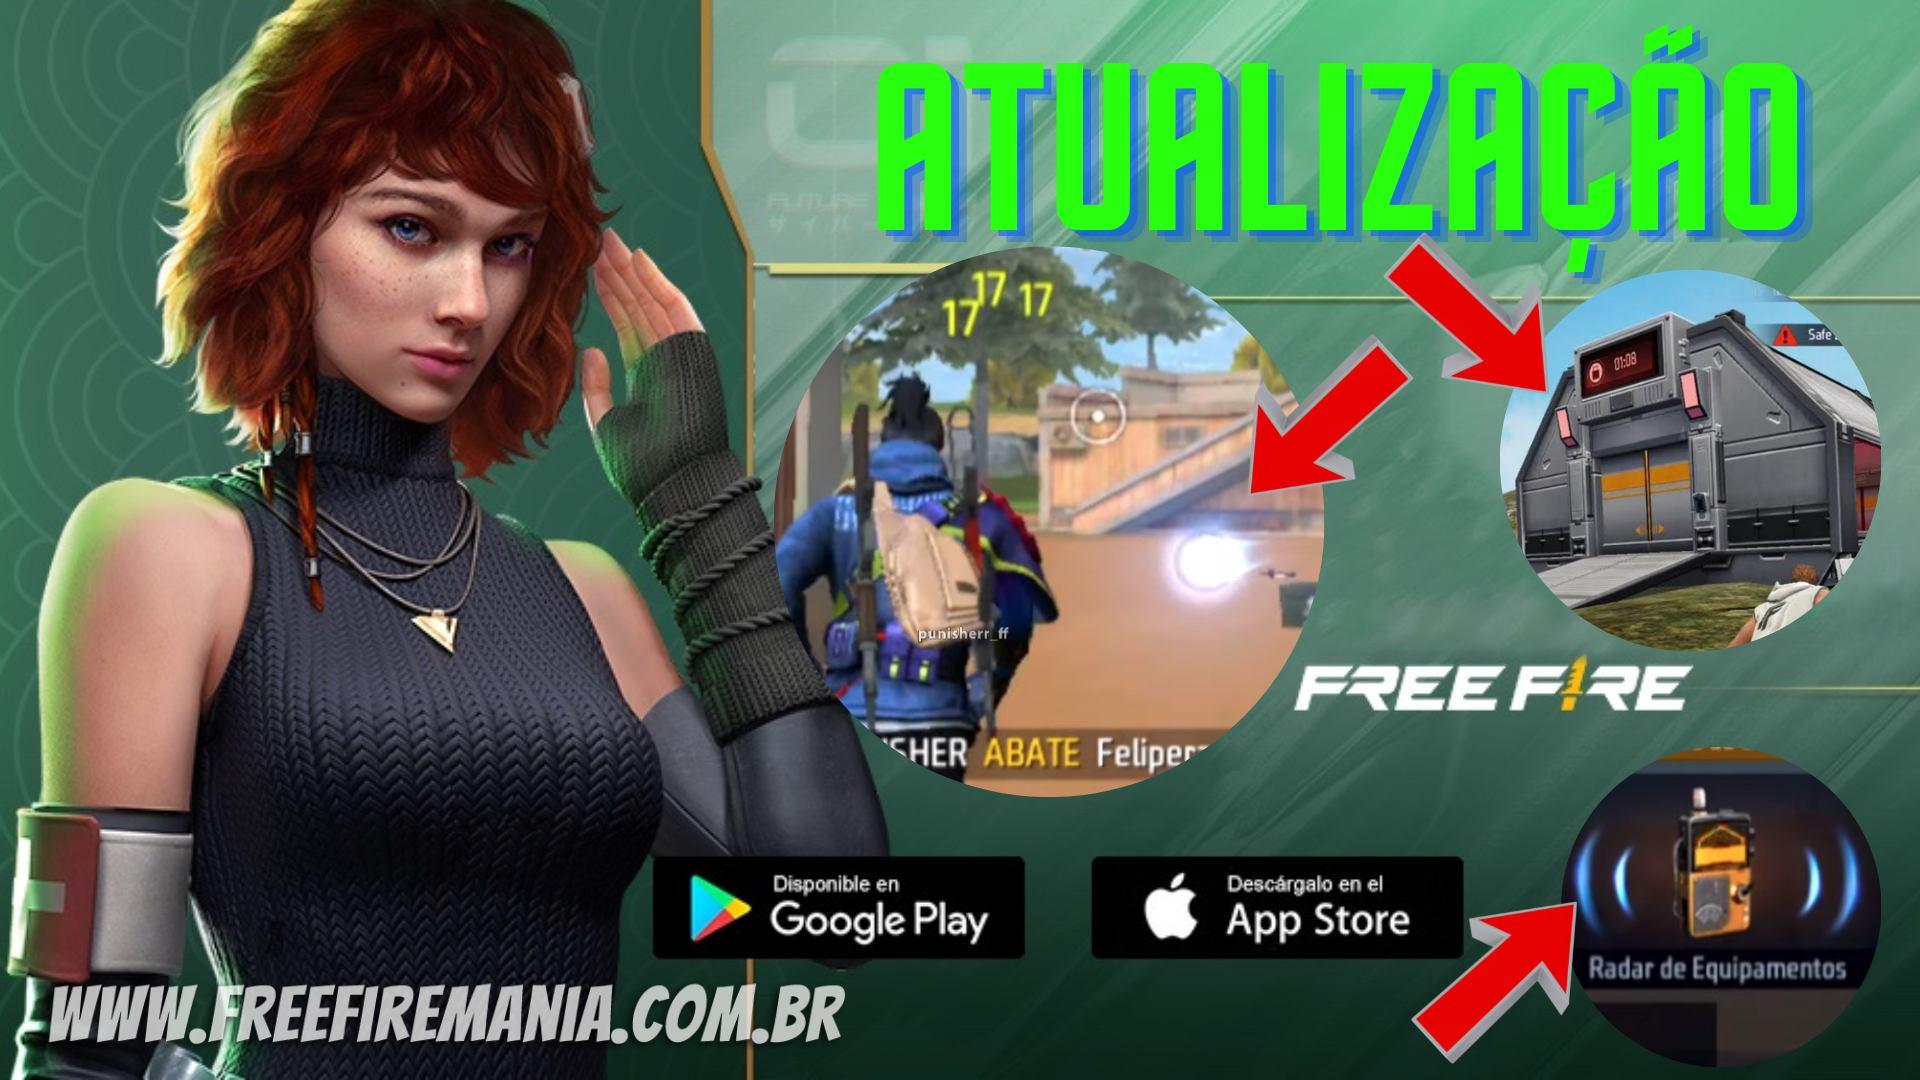 Download Free Fire 2023: veja como baixar o jogo atualizado nas lojas  Android e iOS